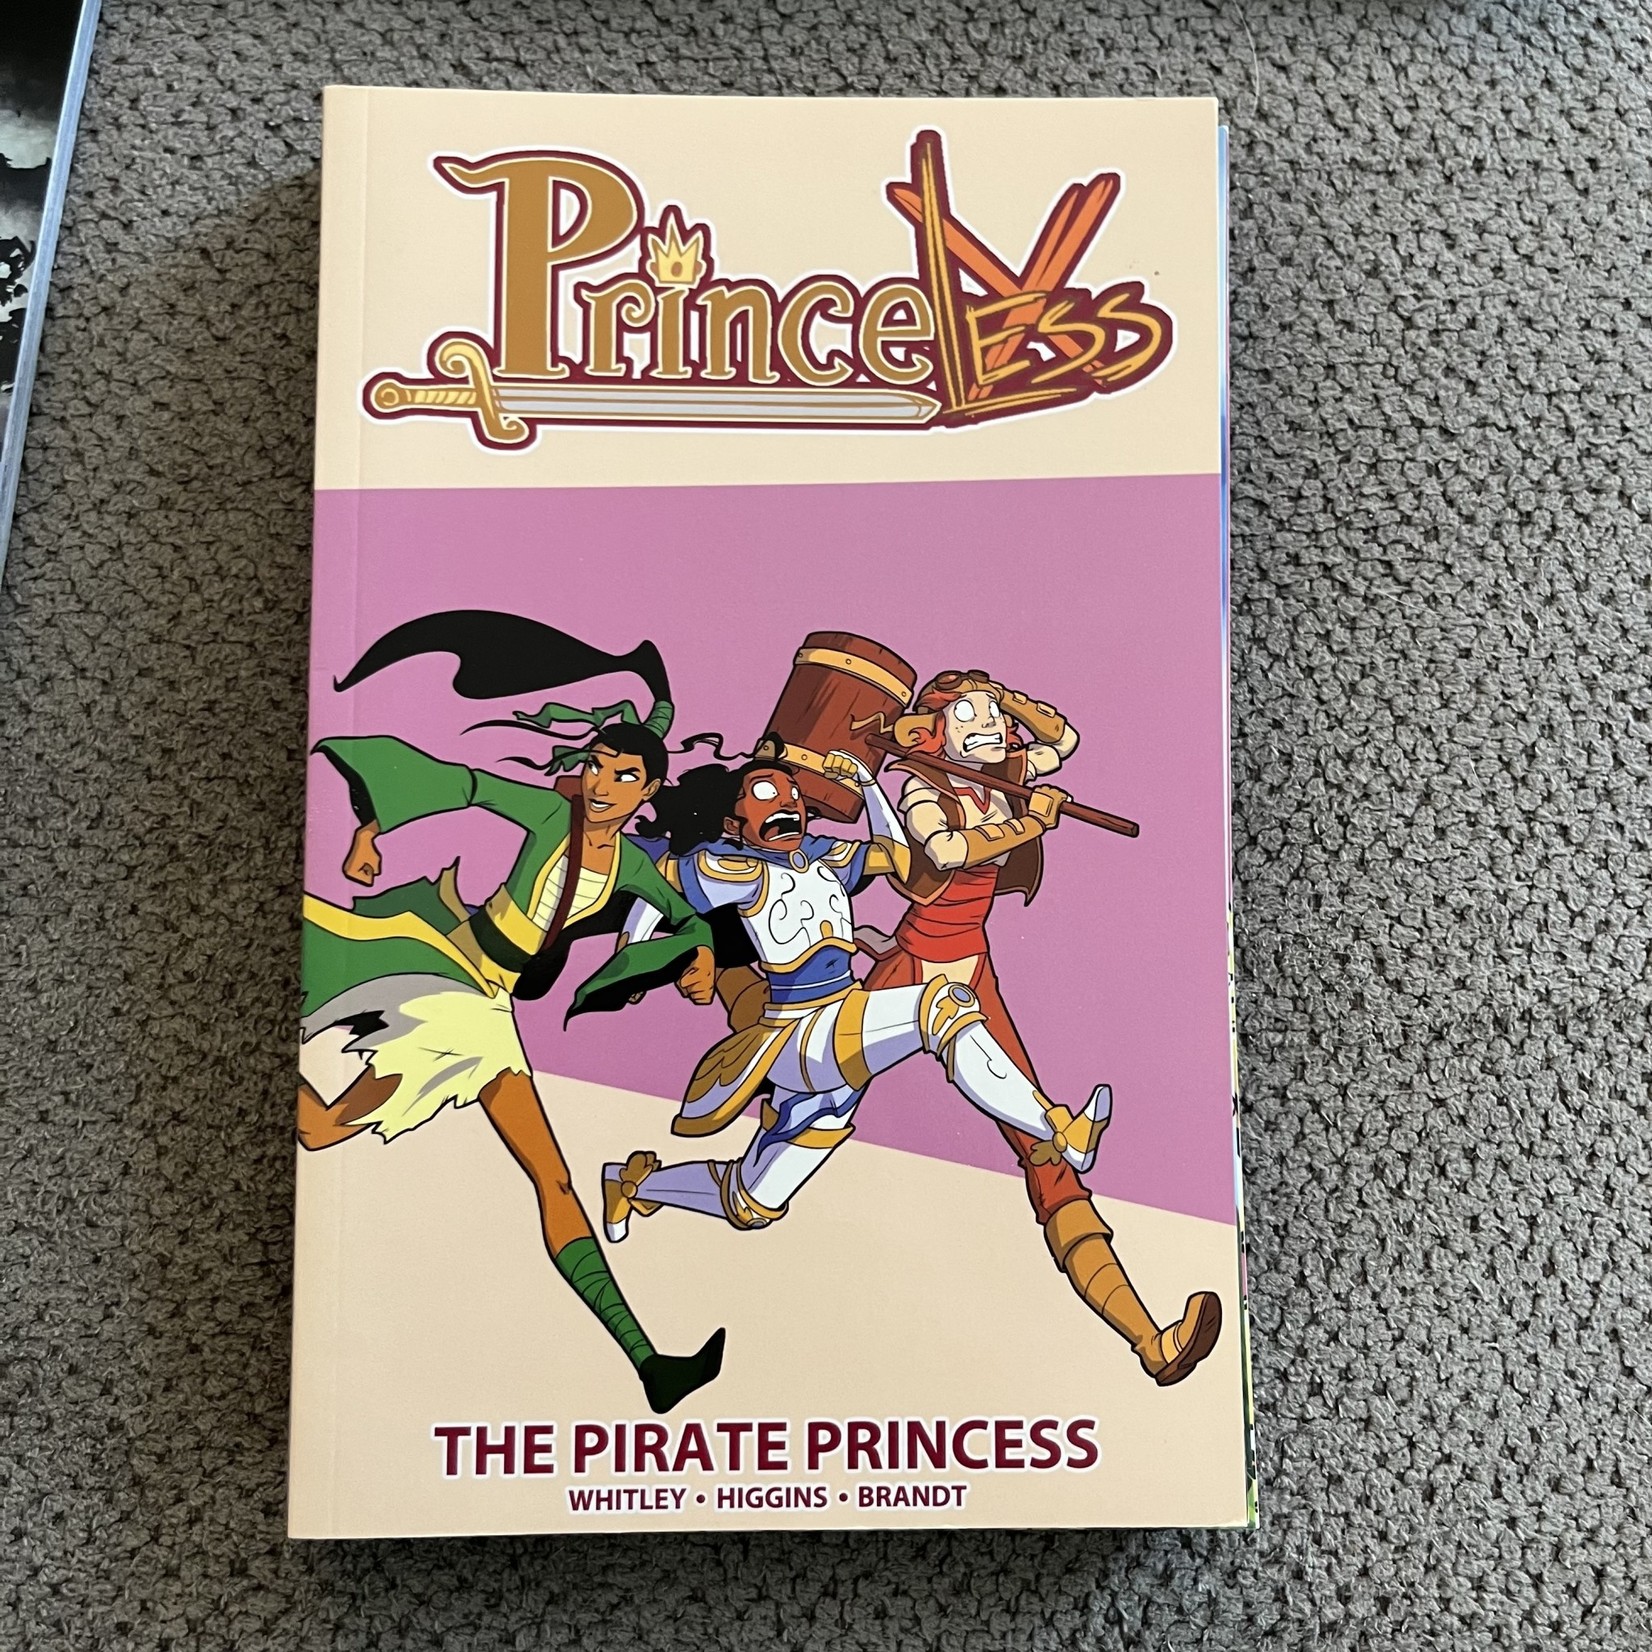 PrinceLess - The Pirate Princess